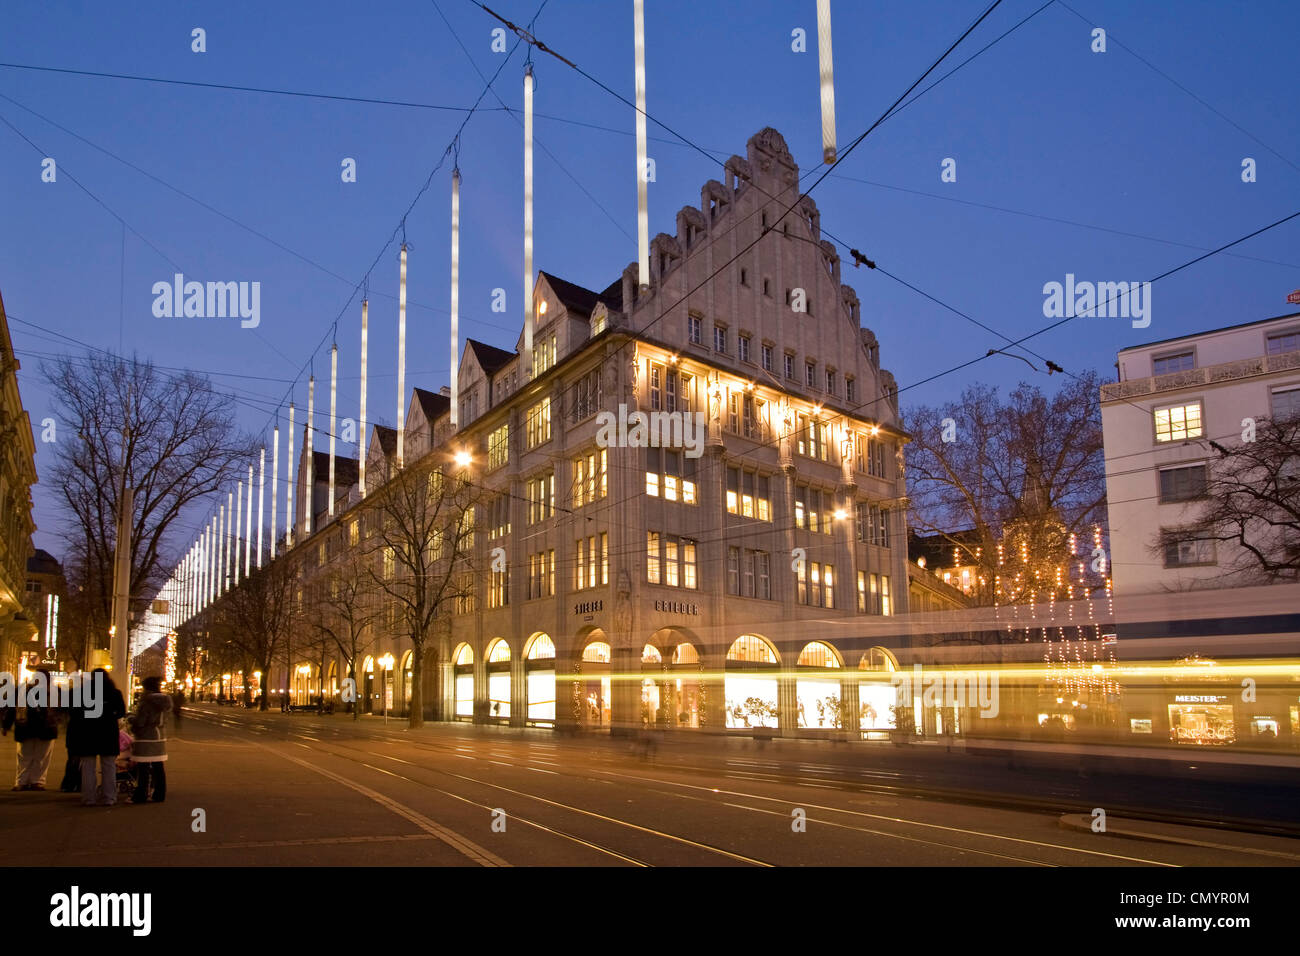 Bahnhofstrasse au crépuscule avec illumination de Noël, tramway Banque D'Images